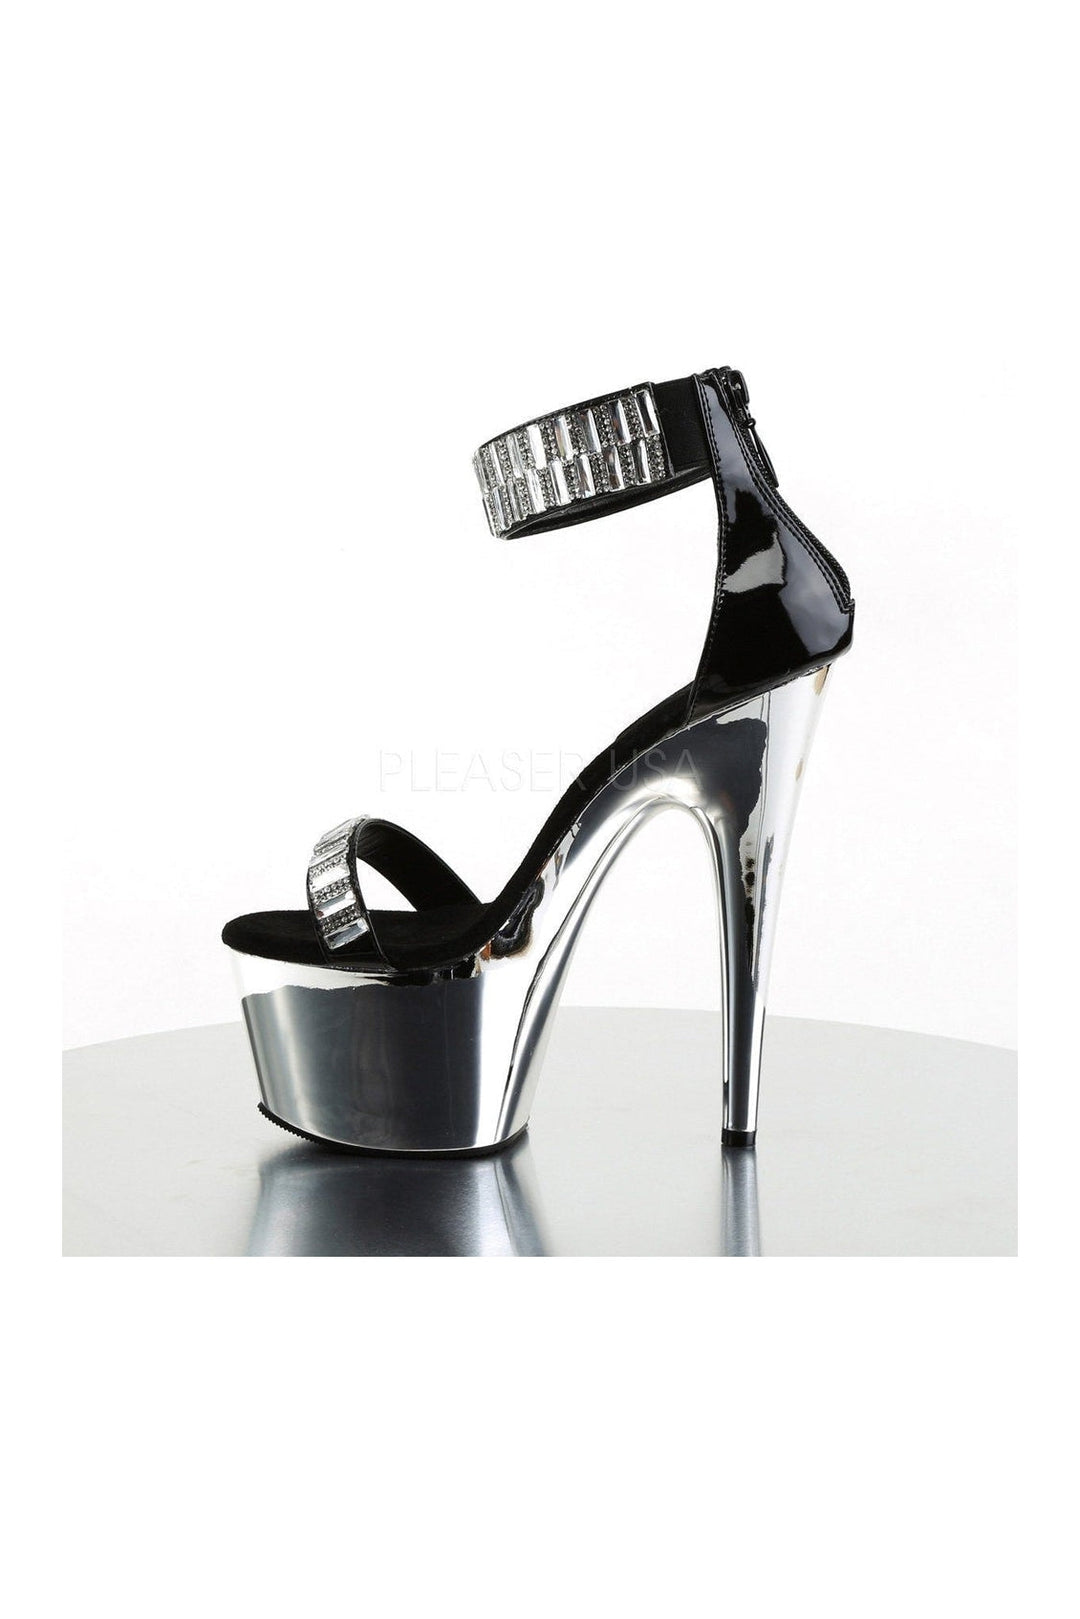 ADORE-769RS Platform Sandal | Black Patent-Pleaser-Sandals-SEXYSHOES.COM